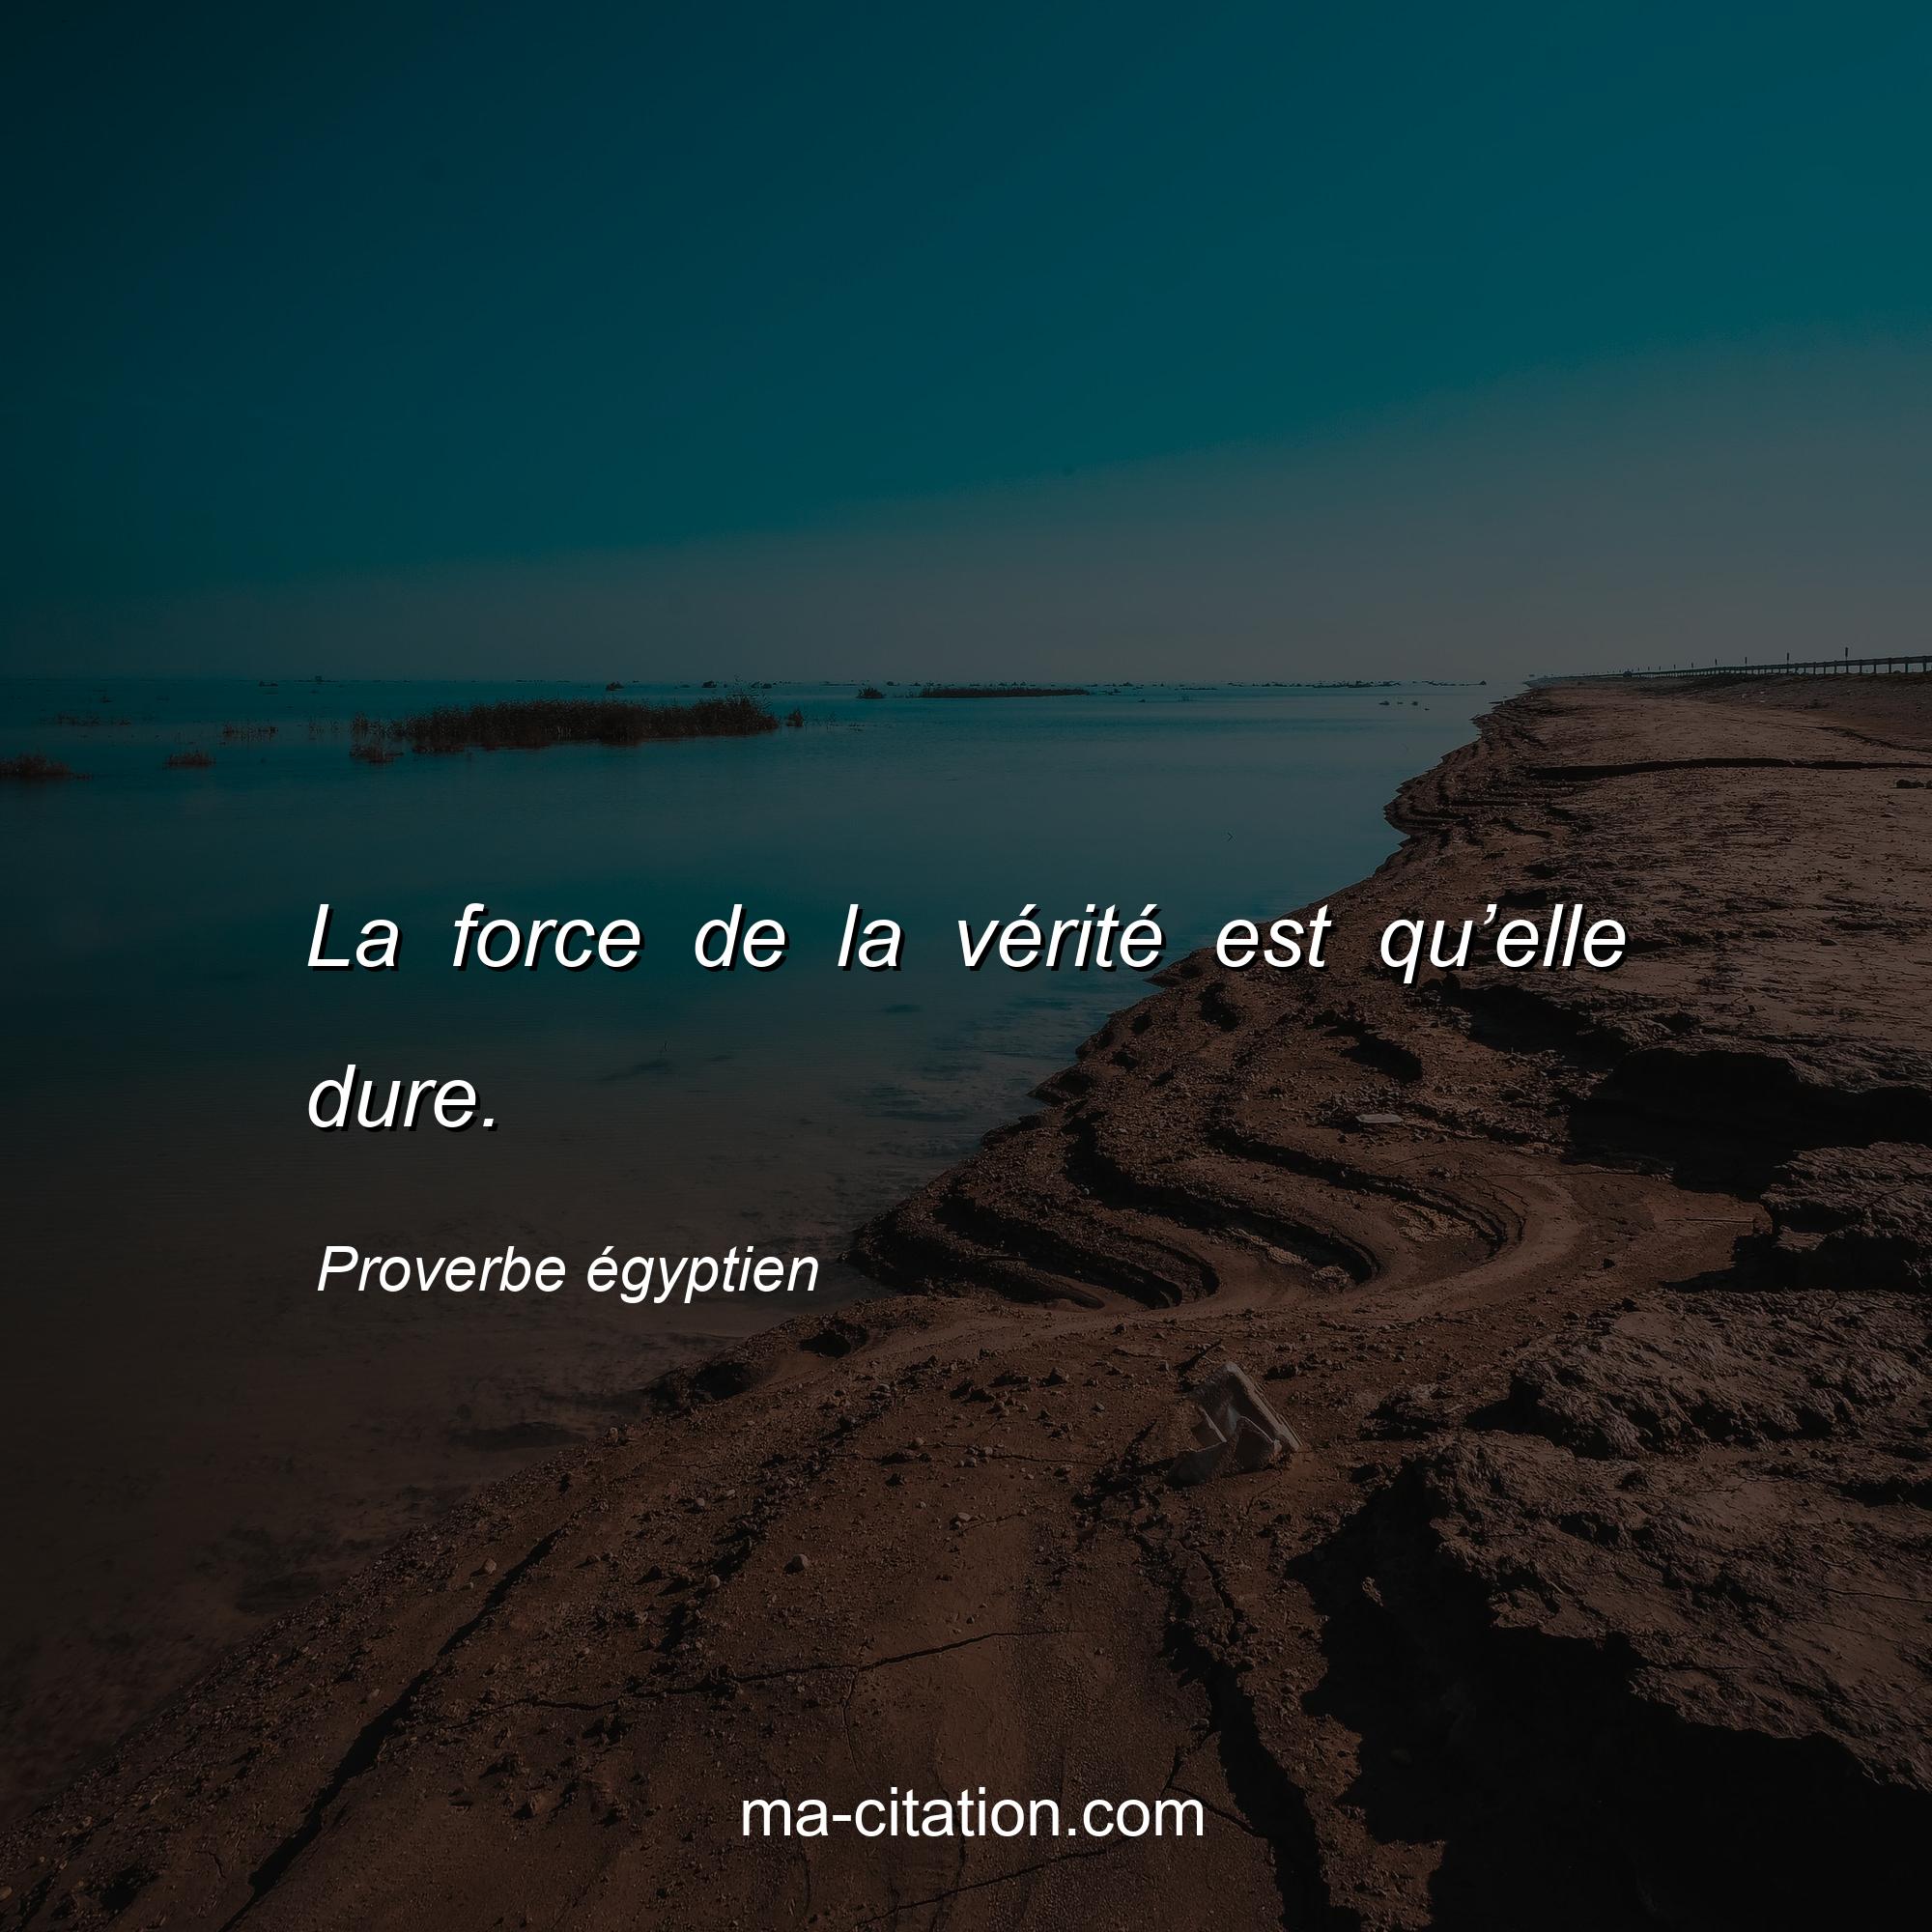 Proverbe égyptien : La force de la vérité est qu’elle dure.